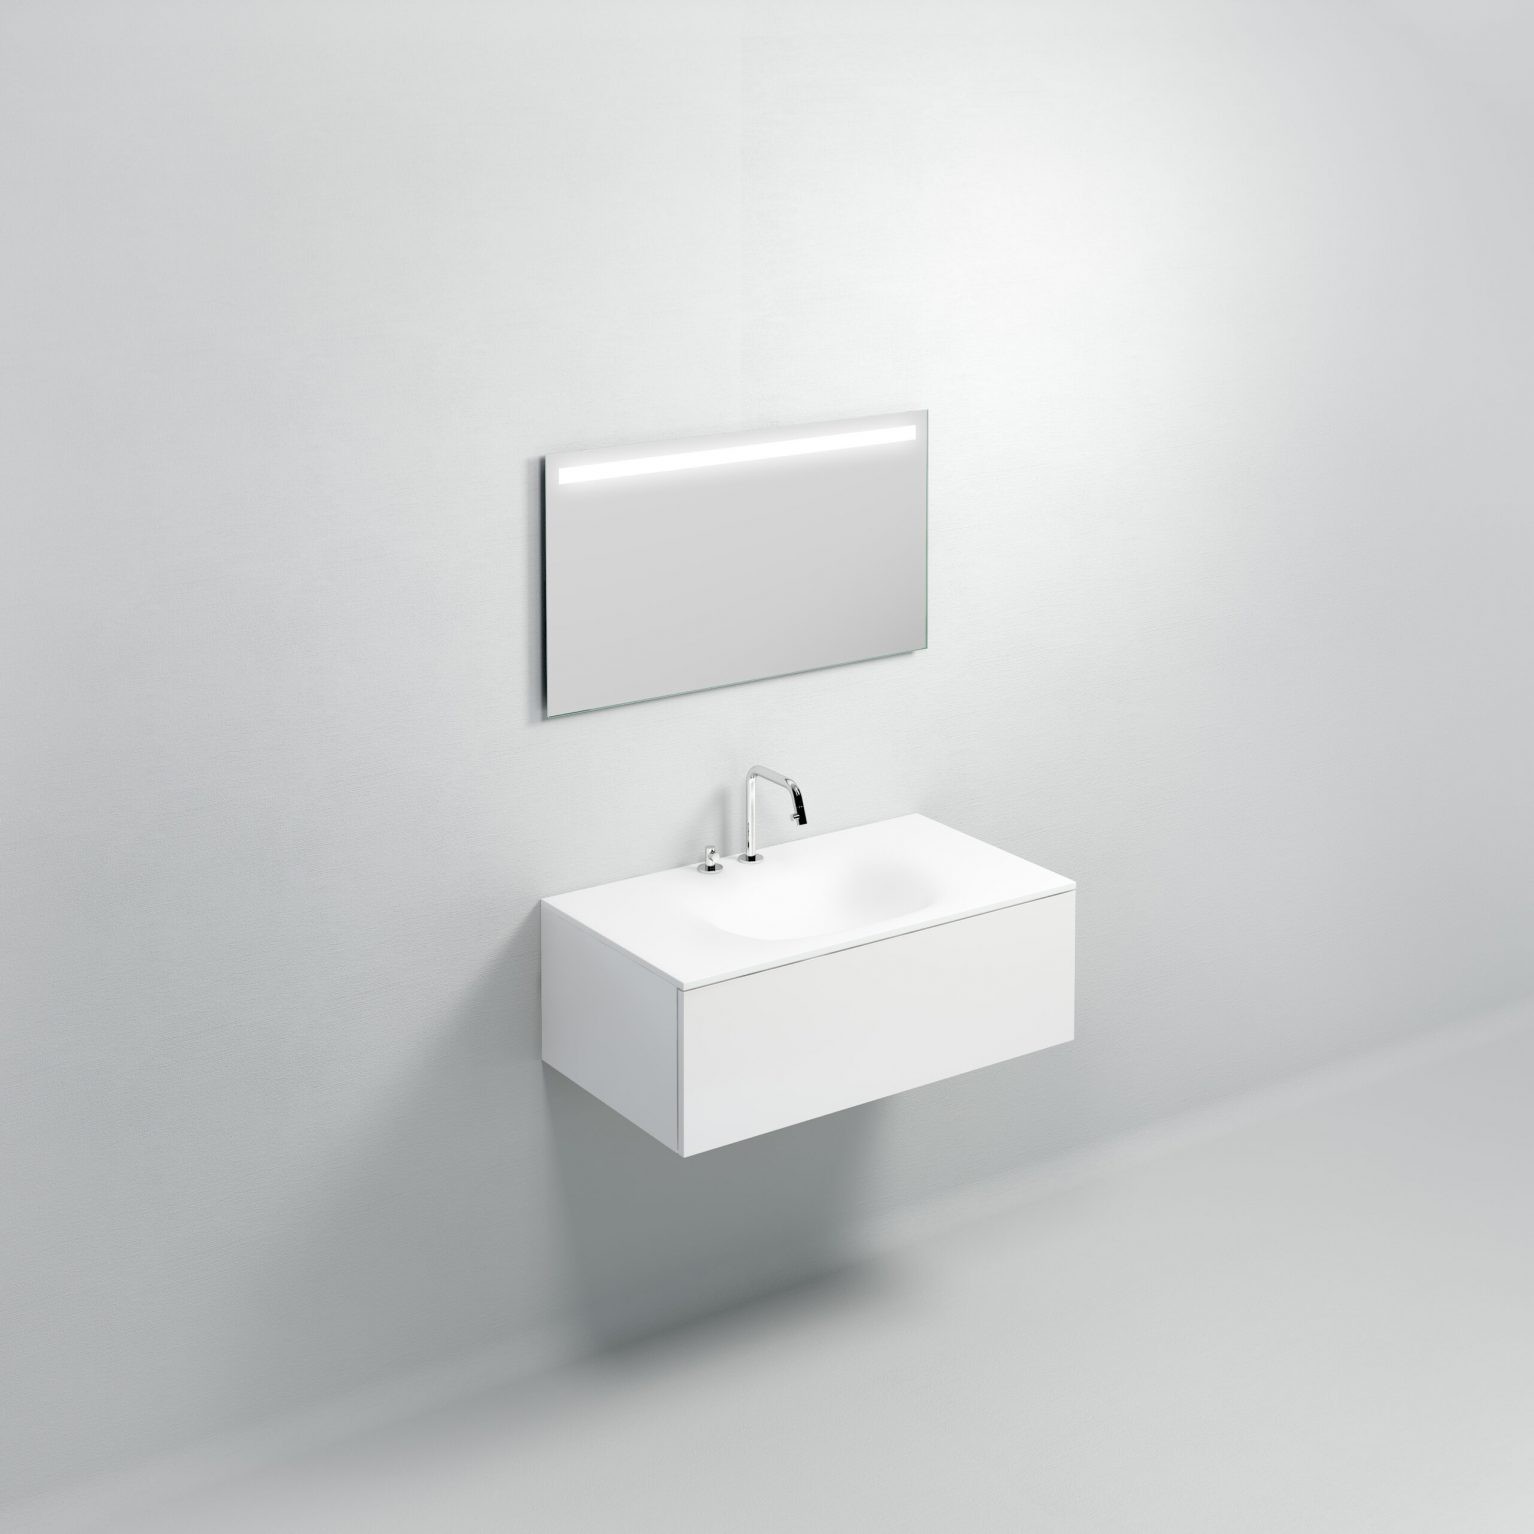 wastafel-wit-toilet-badkamer-luxe-sanitair-Hammock-clou-CL021307202-aluite-90cm-wasbak-waskom-blad-kraangat-afvoer-waterstop-shadow-Sp